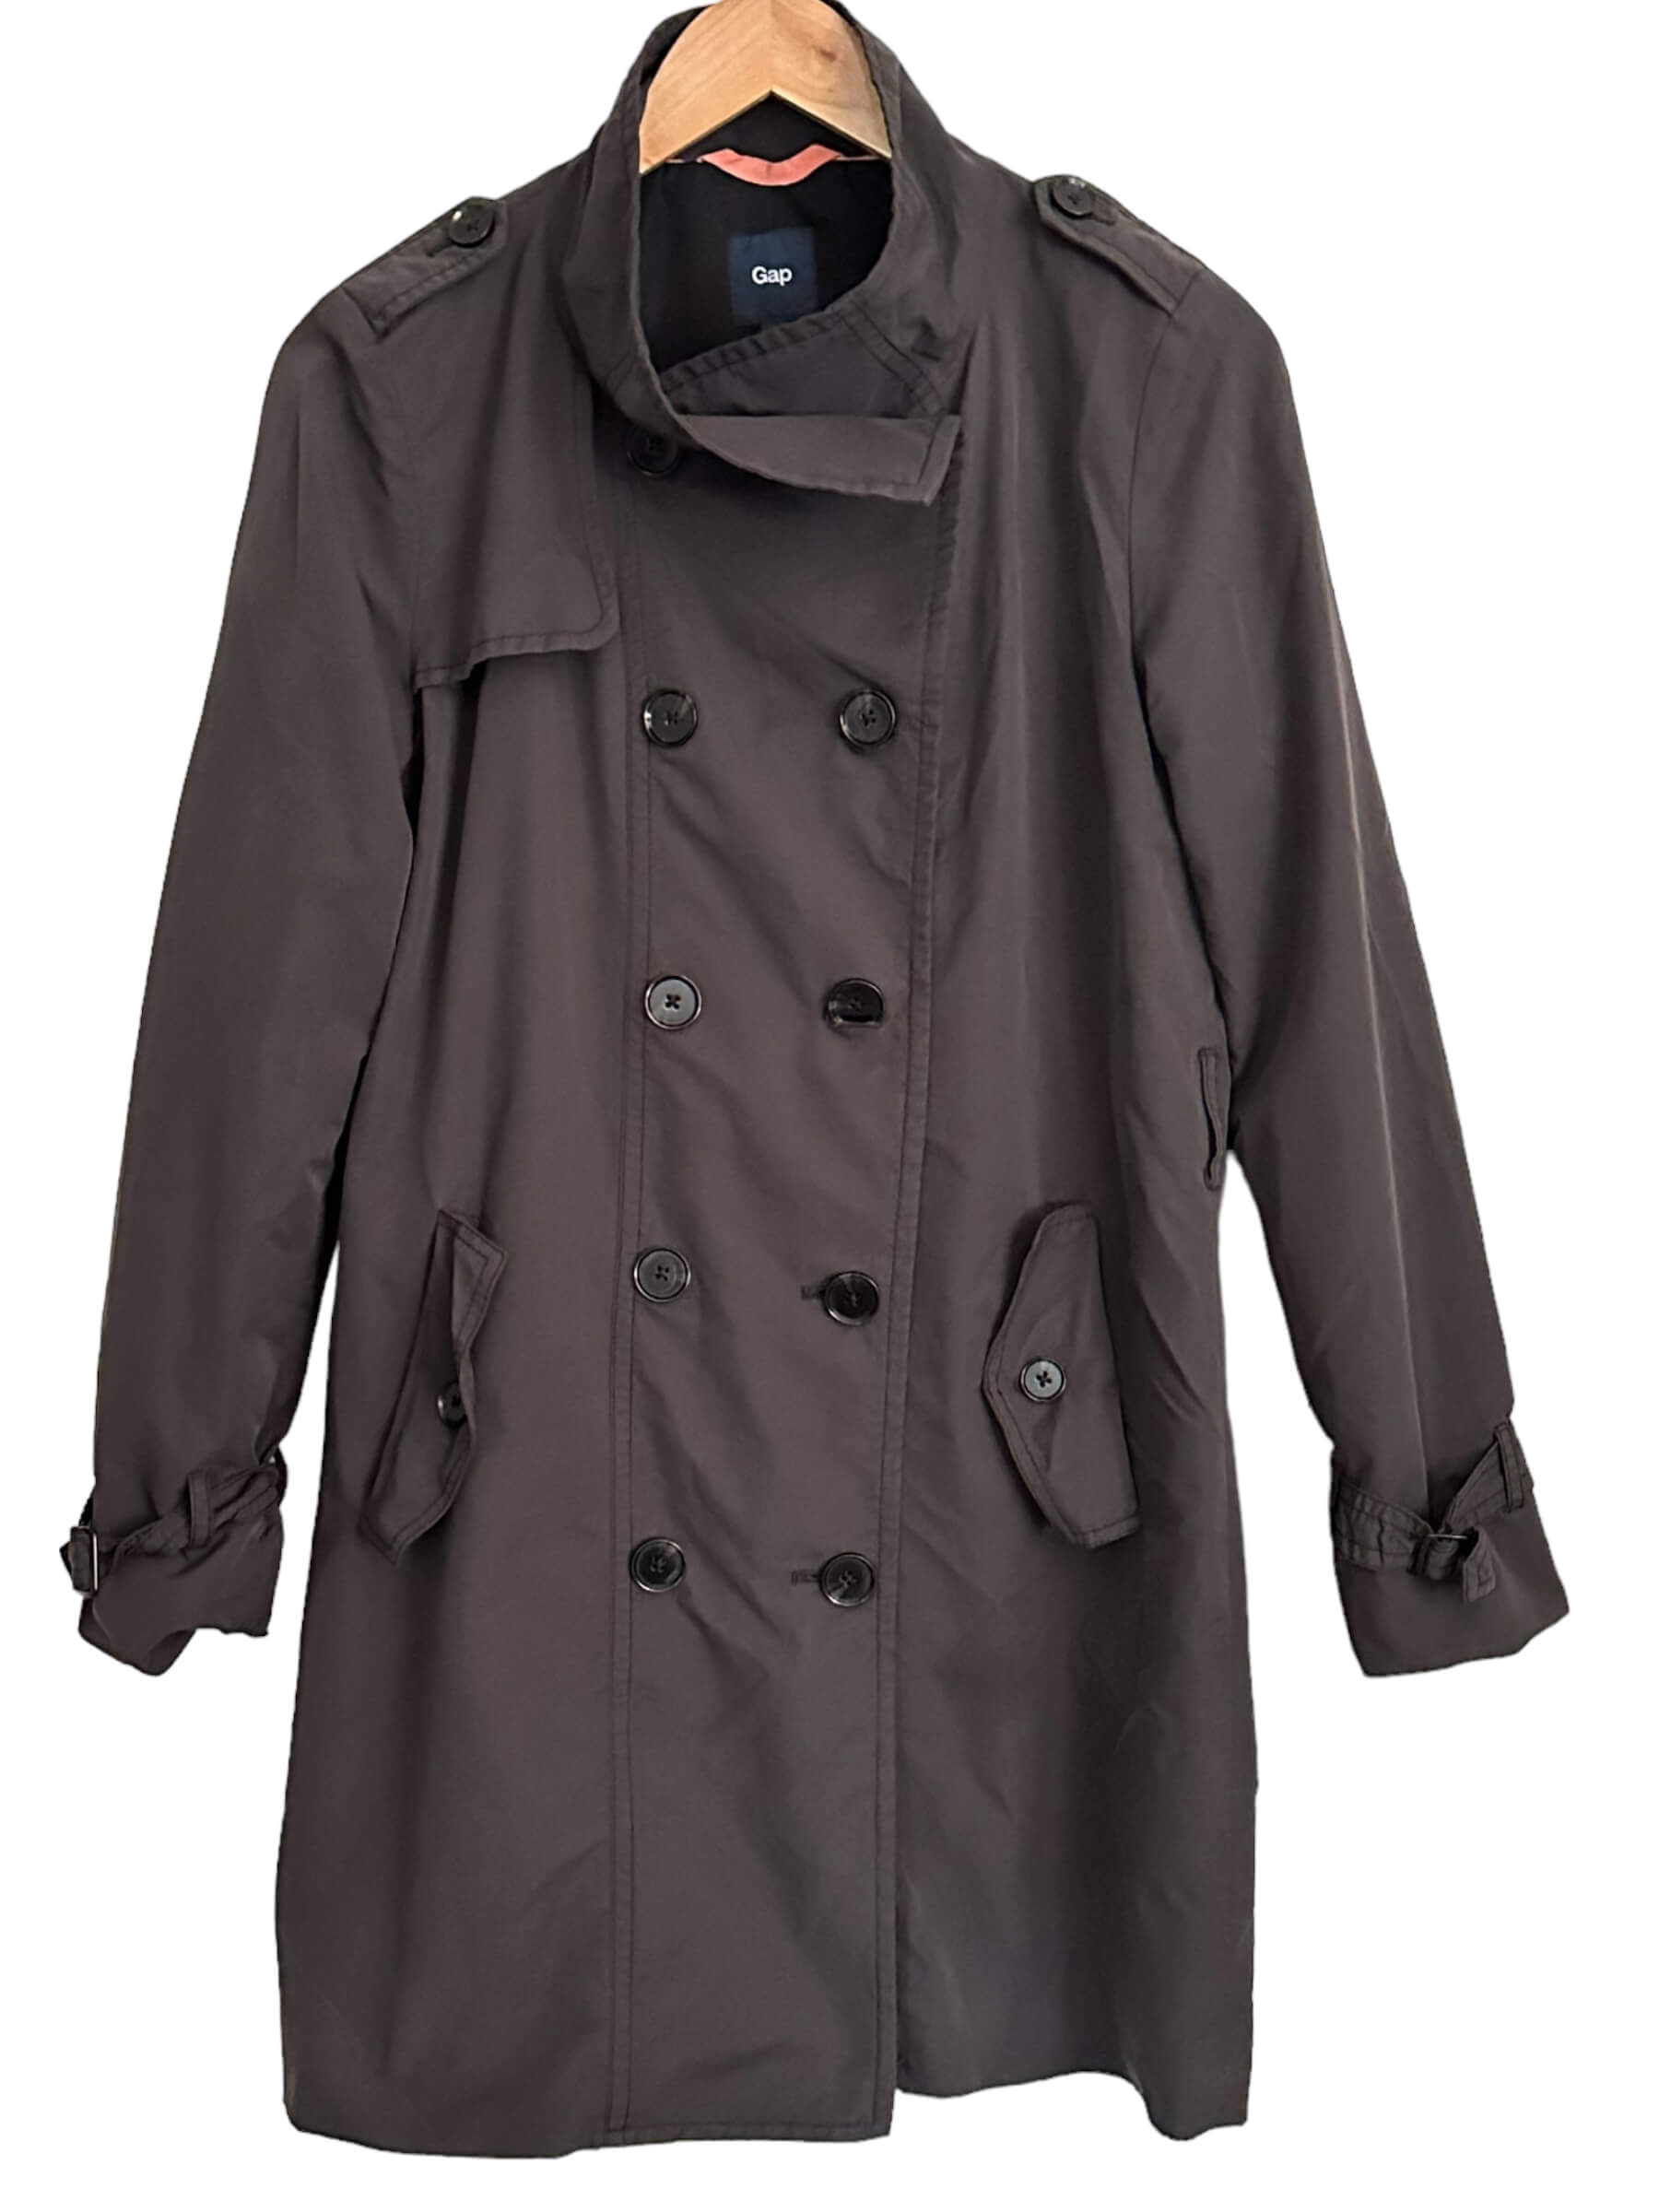 Dark Autumn GAP armory gray trench coat